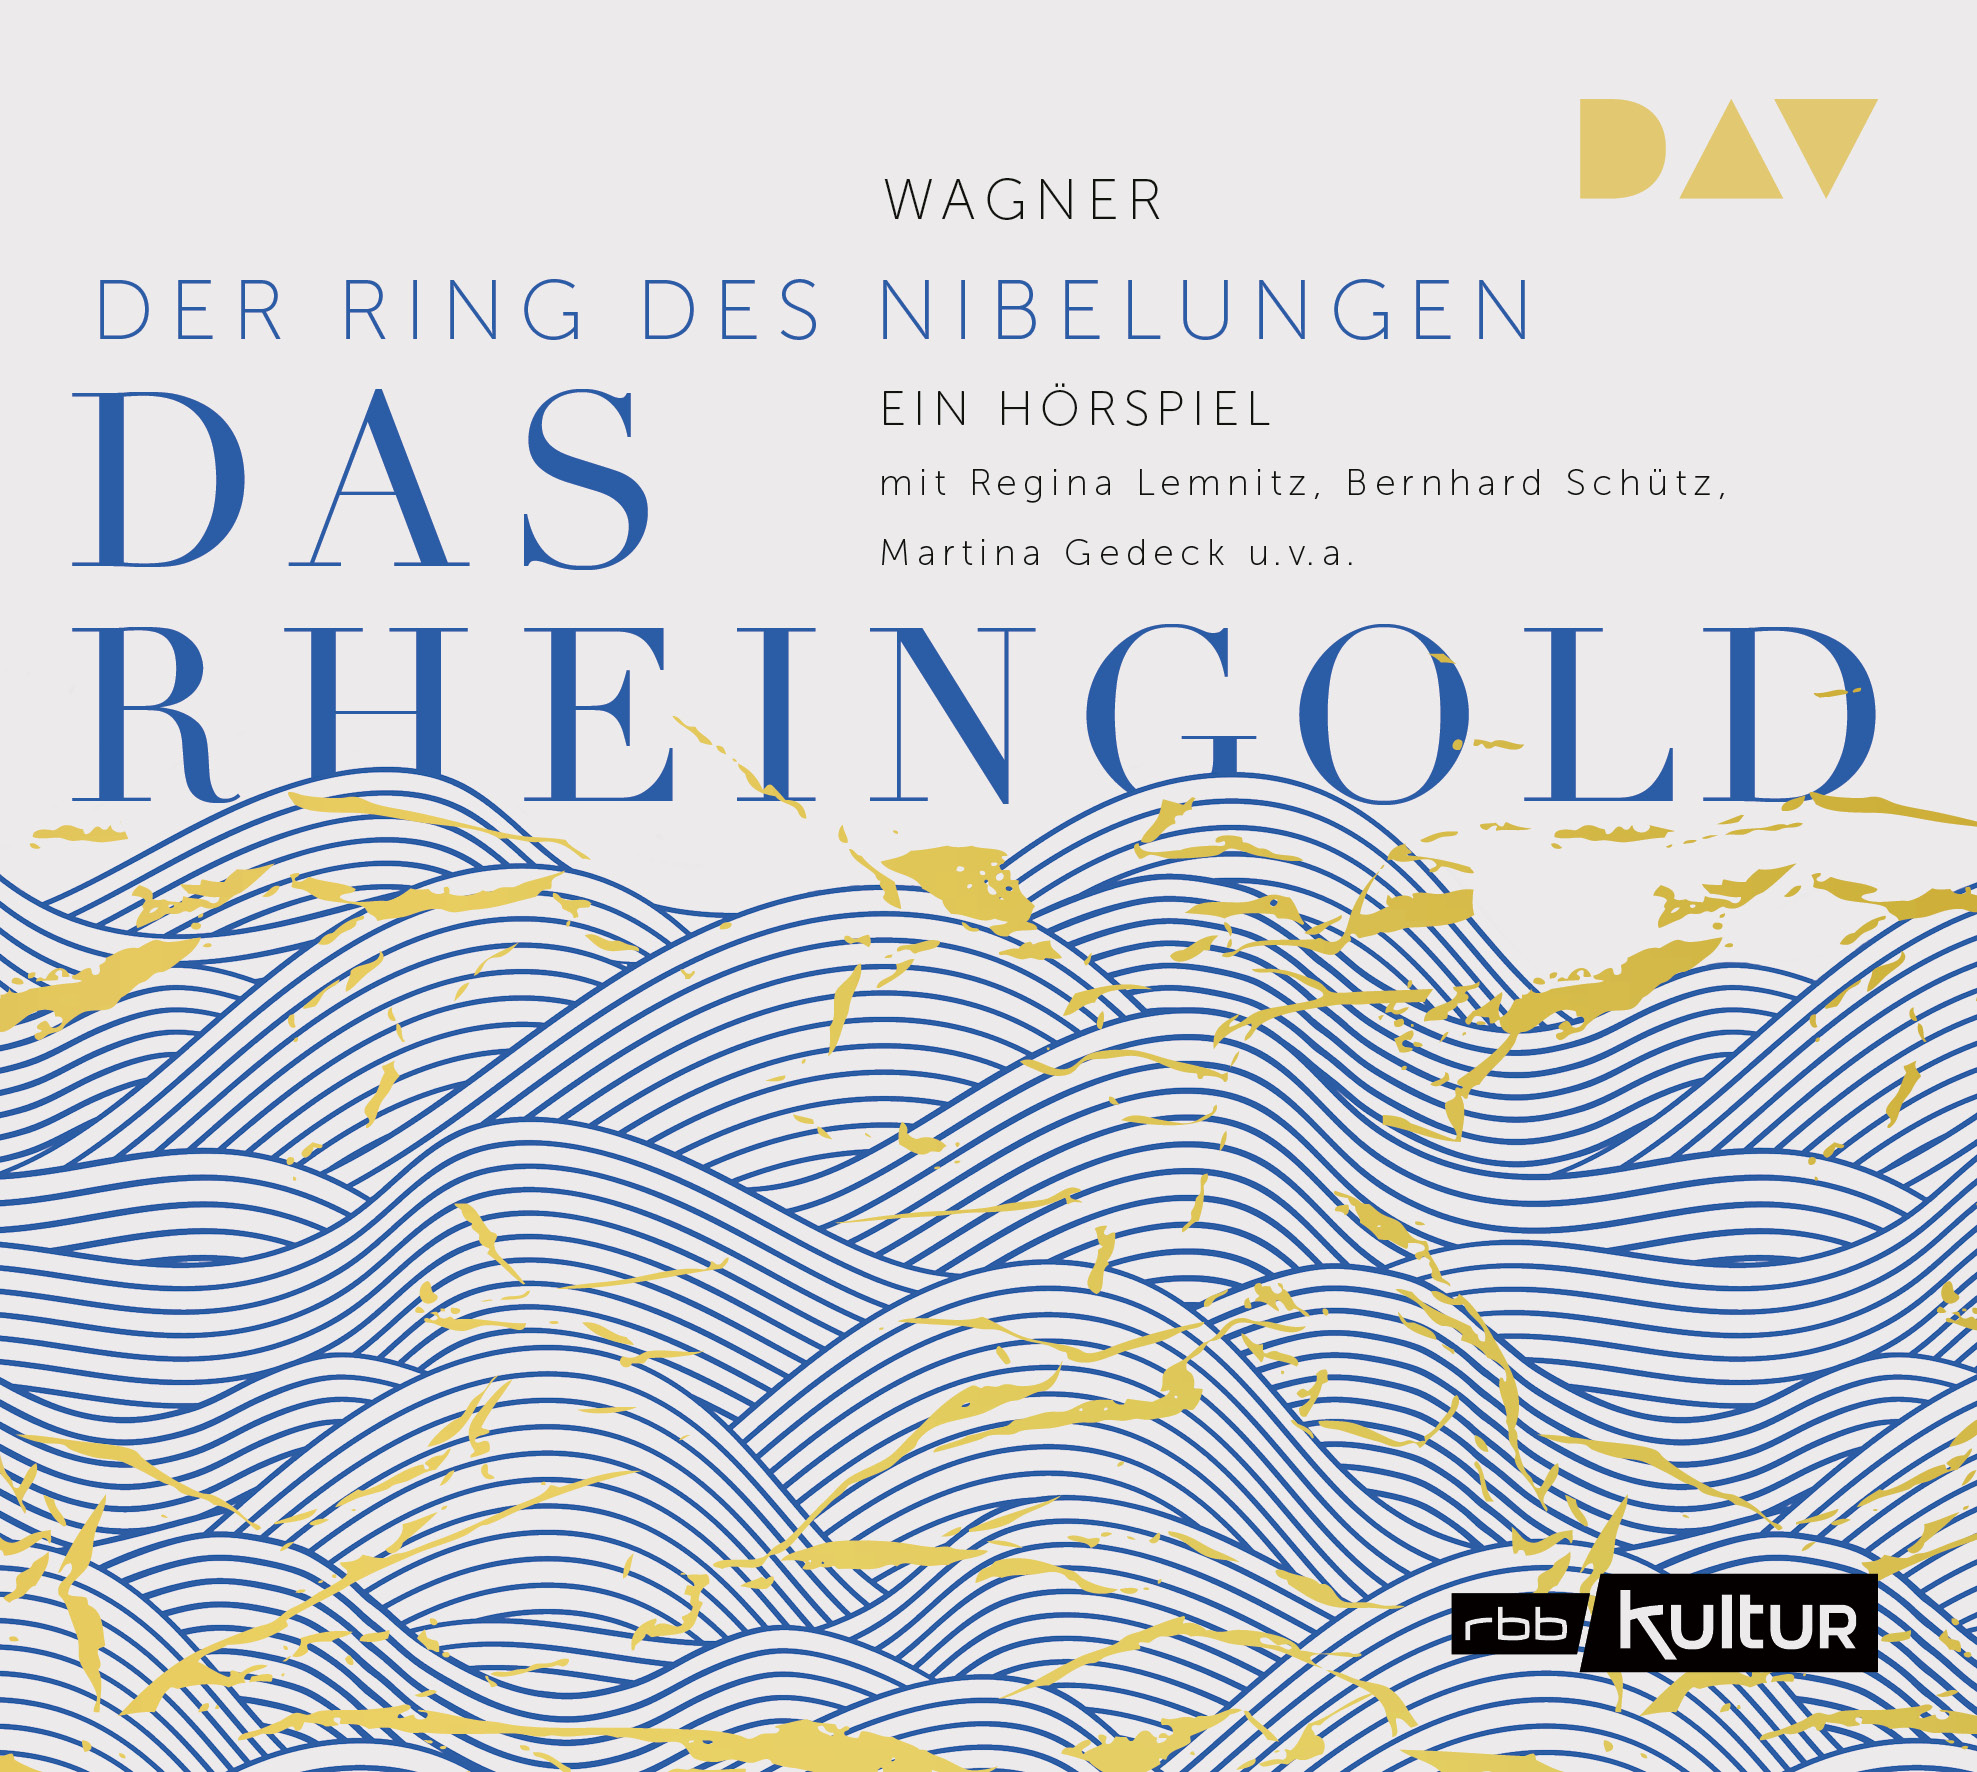 Rheingold. Der des Nibelungen 1 Richard Wagner – Hörspiel mit Regina Lemnitz, Bernhard Schütz, Martina Gedeck Hörbuch (Klassiker, Literatur) – Der Audio Verlag